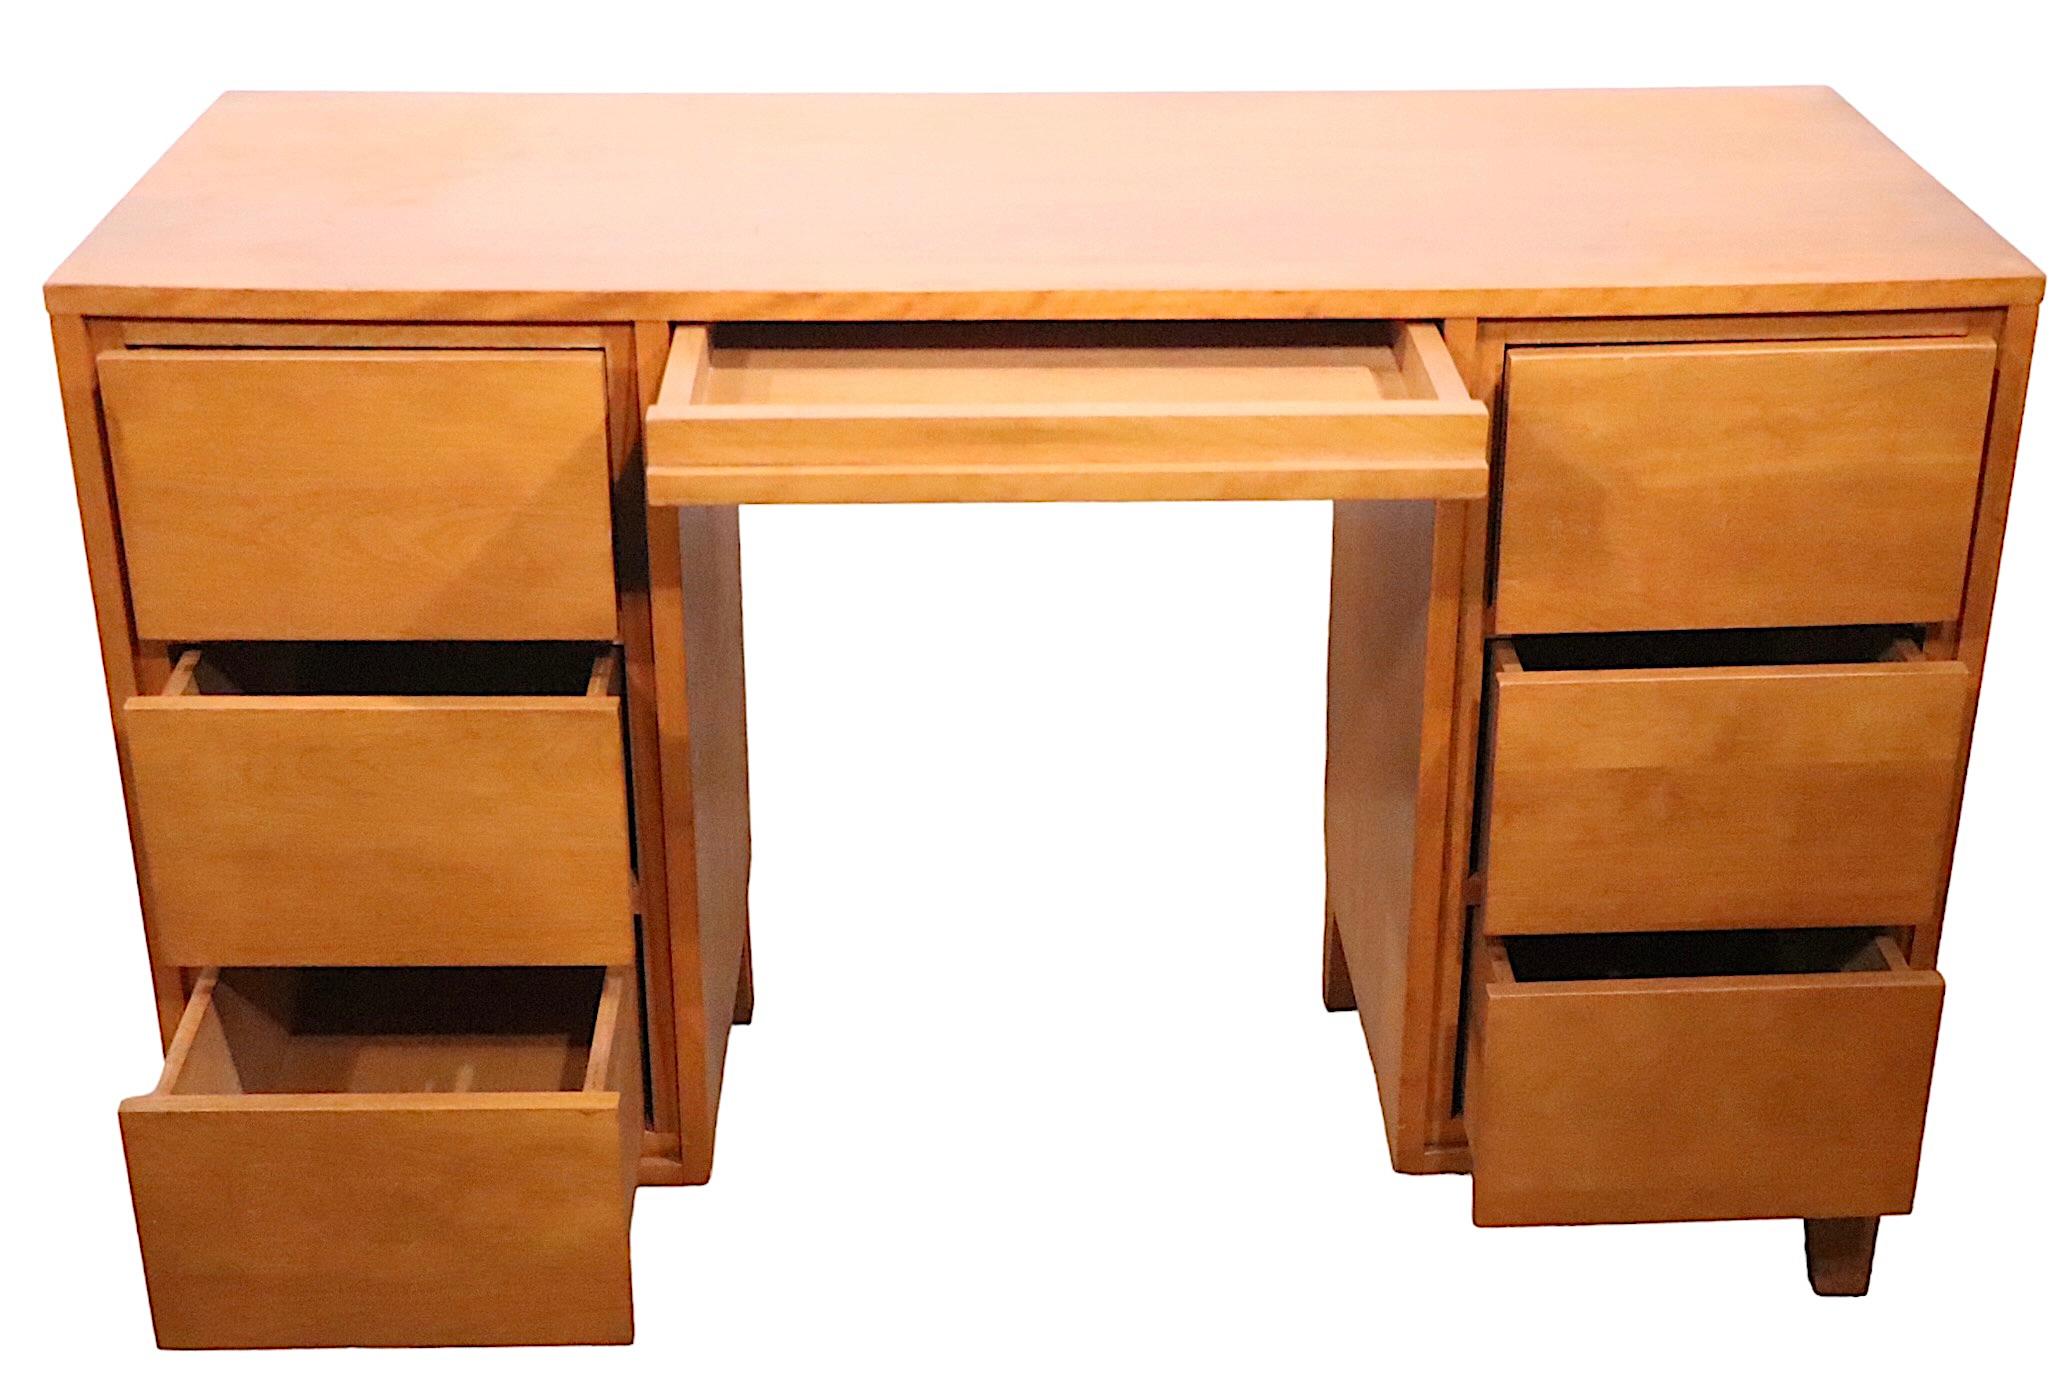 Architektonischer Mid-Century-Schreibtisch mit originalem Stuhl, entworfen von Leslie Diamond für Conant Ball, als Teil ihrer äußerst erfolgreichen Modern Mates-Serie.  Dieses Stück ist aus massivem Holz gefertigt, die Schubladen sind alle voll